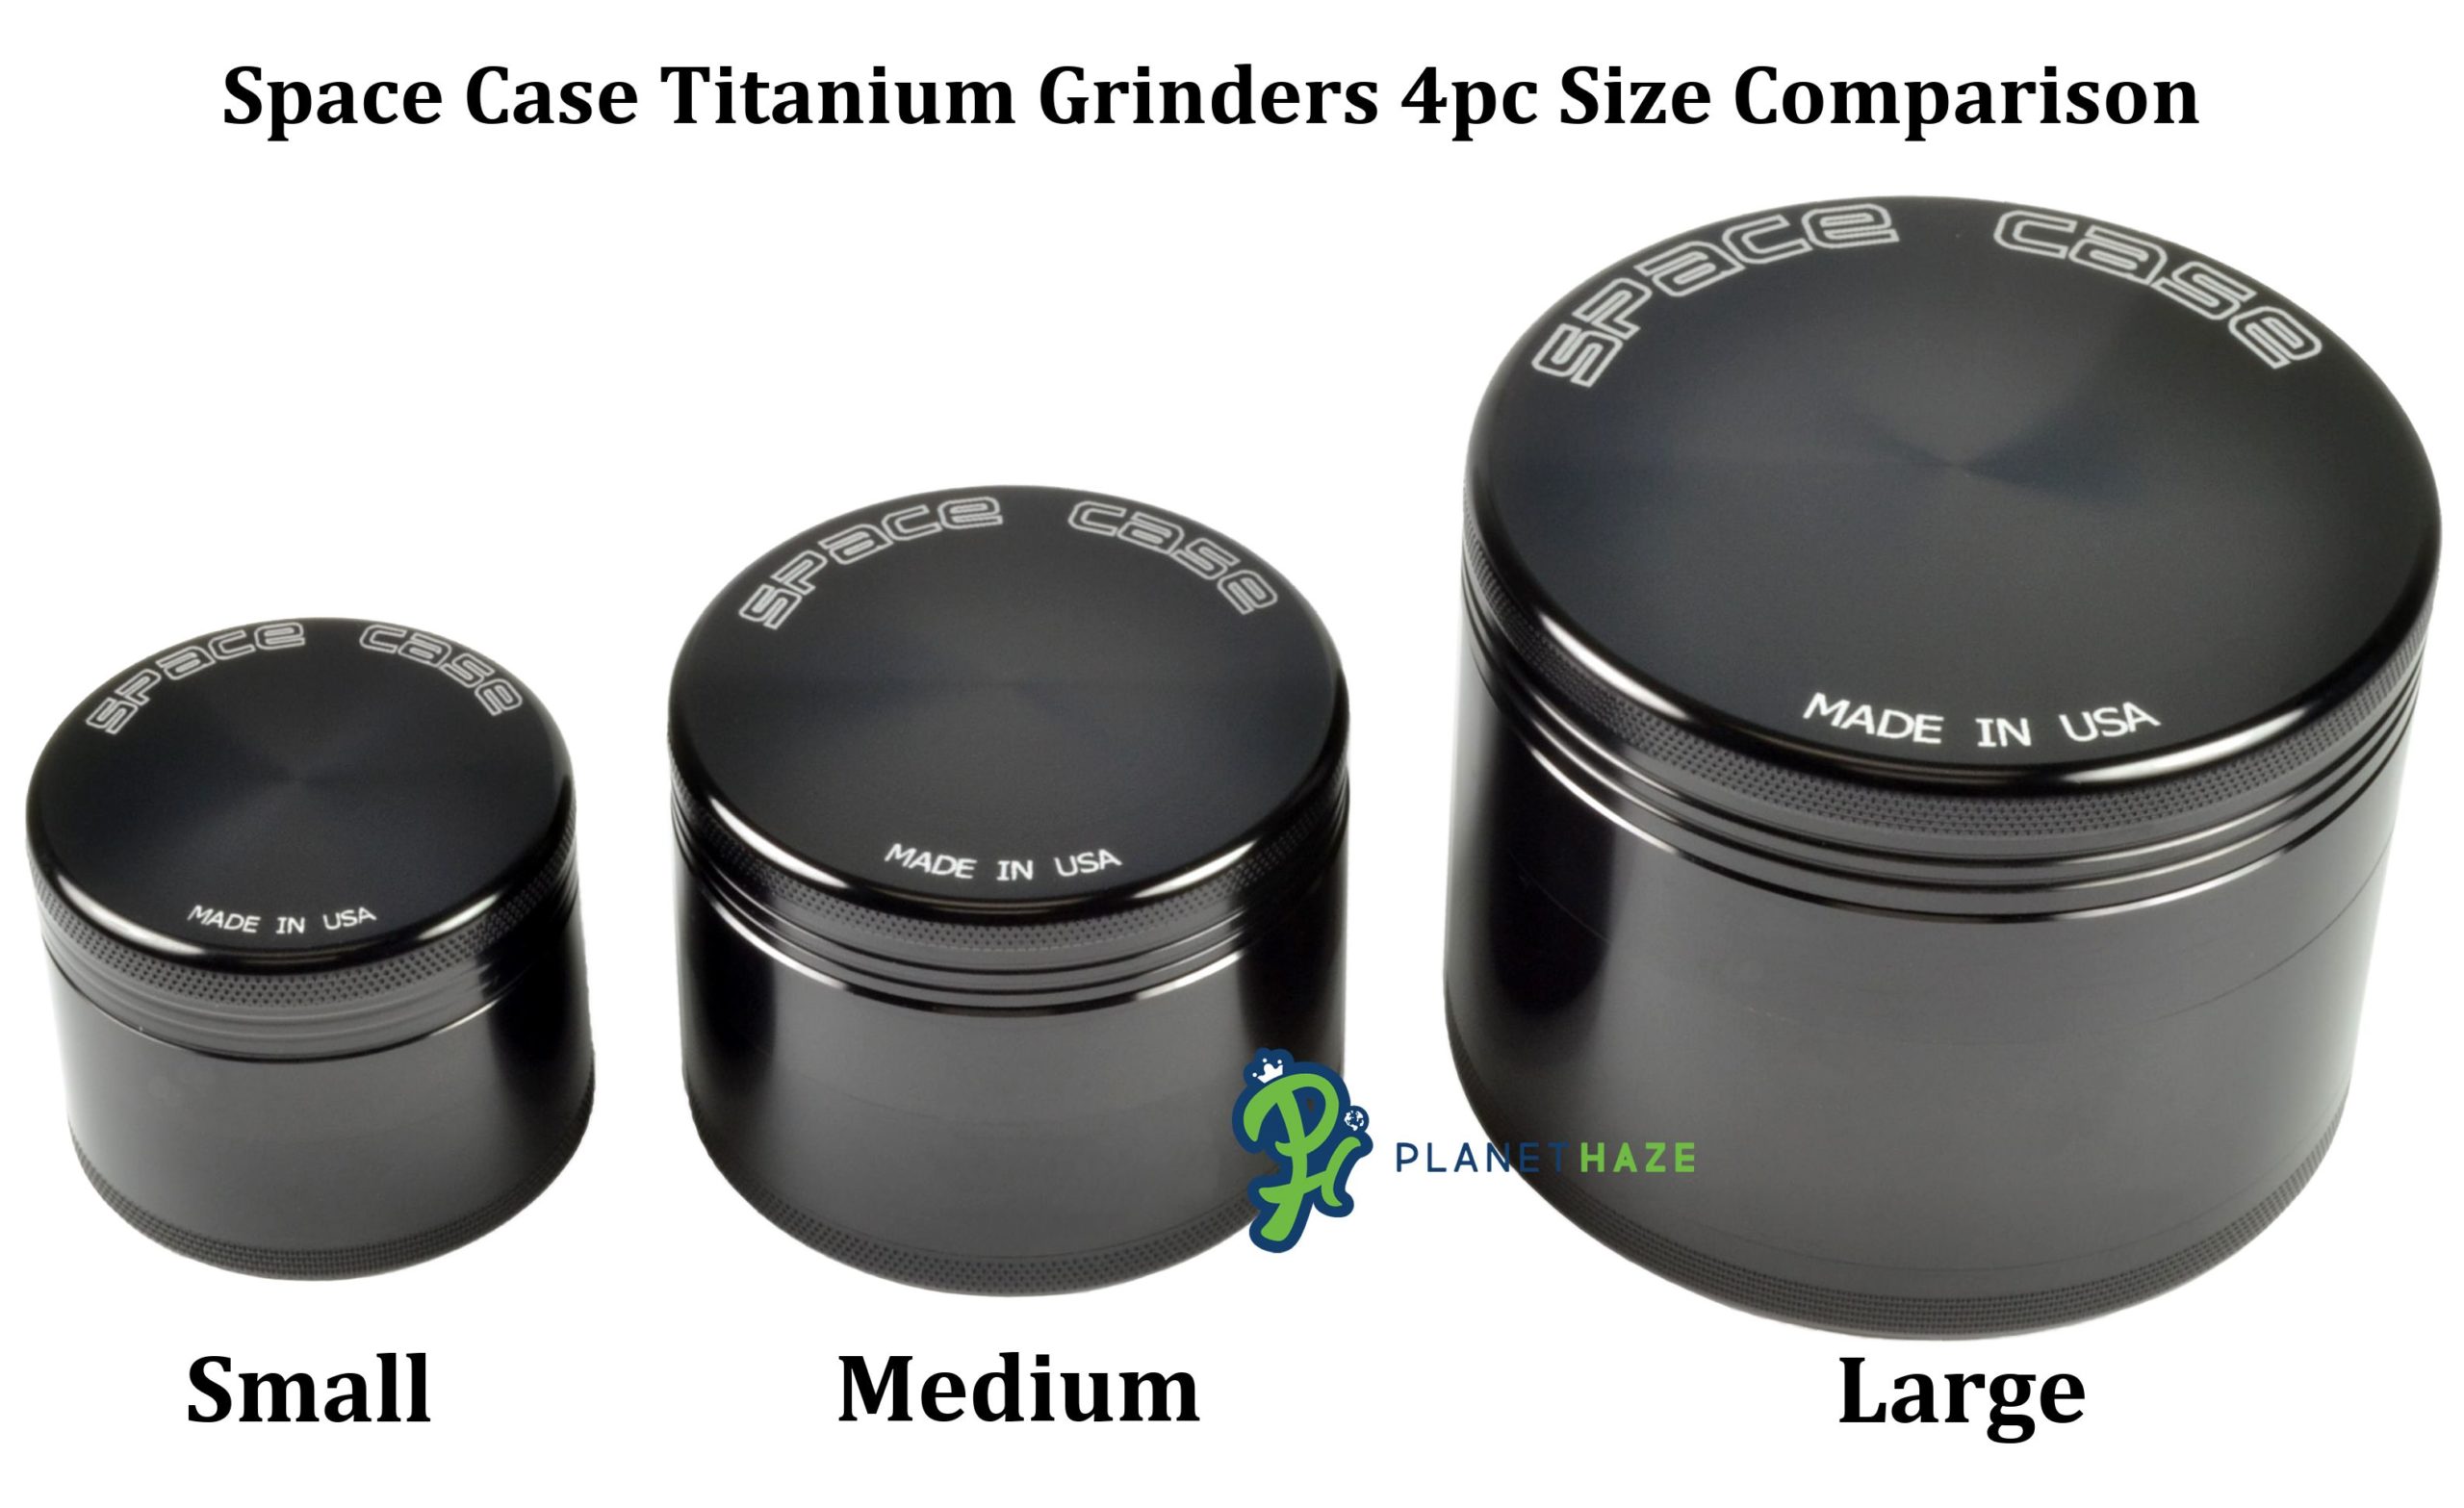 Space Case Titanium 4pc Grinder Size Comparison